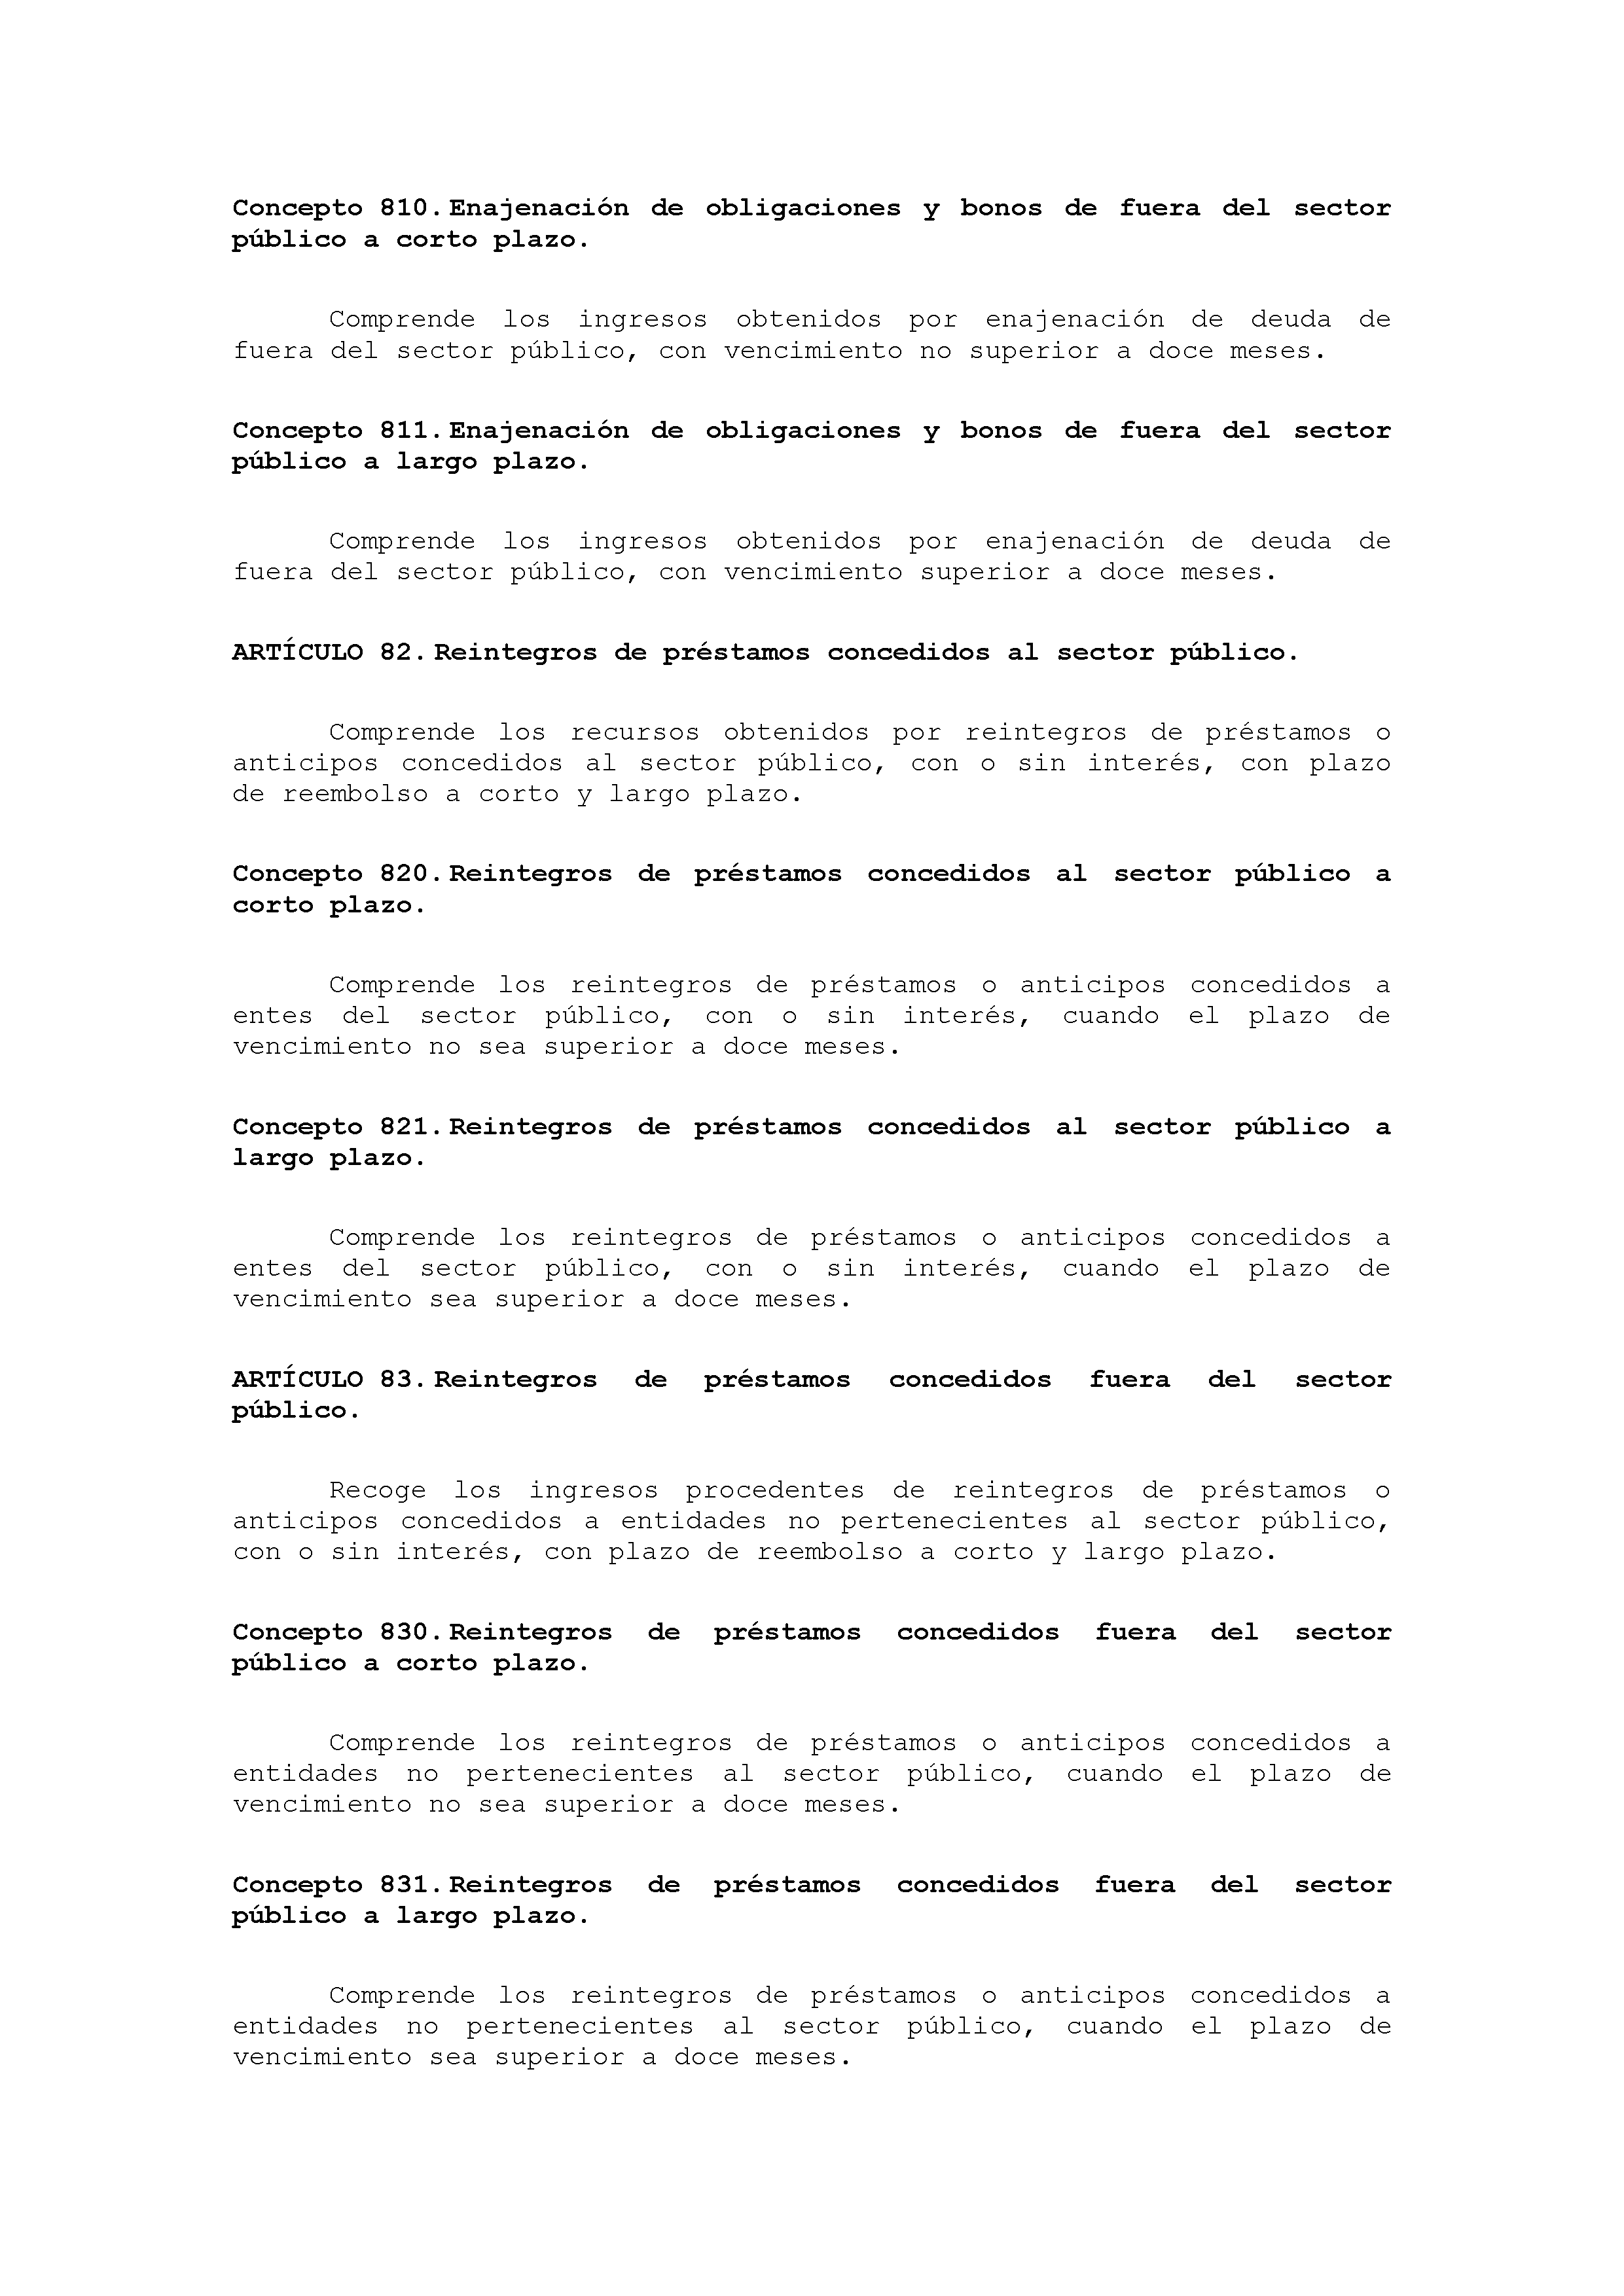 ANEXO VIII CÓDIGO DE LA CLASIFICACIÓN ECONÓMICA DE LOS INGRESOS PÚBLICOS Pag 24